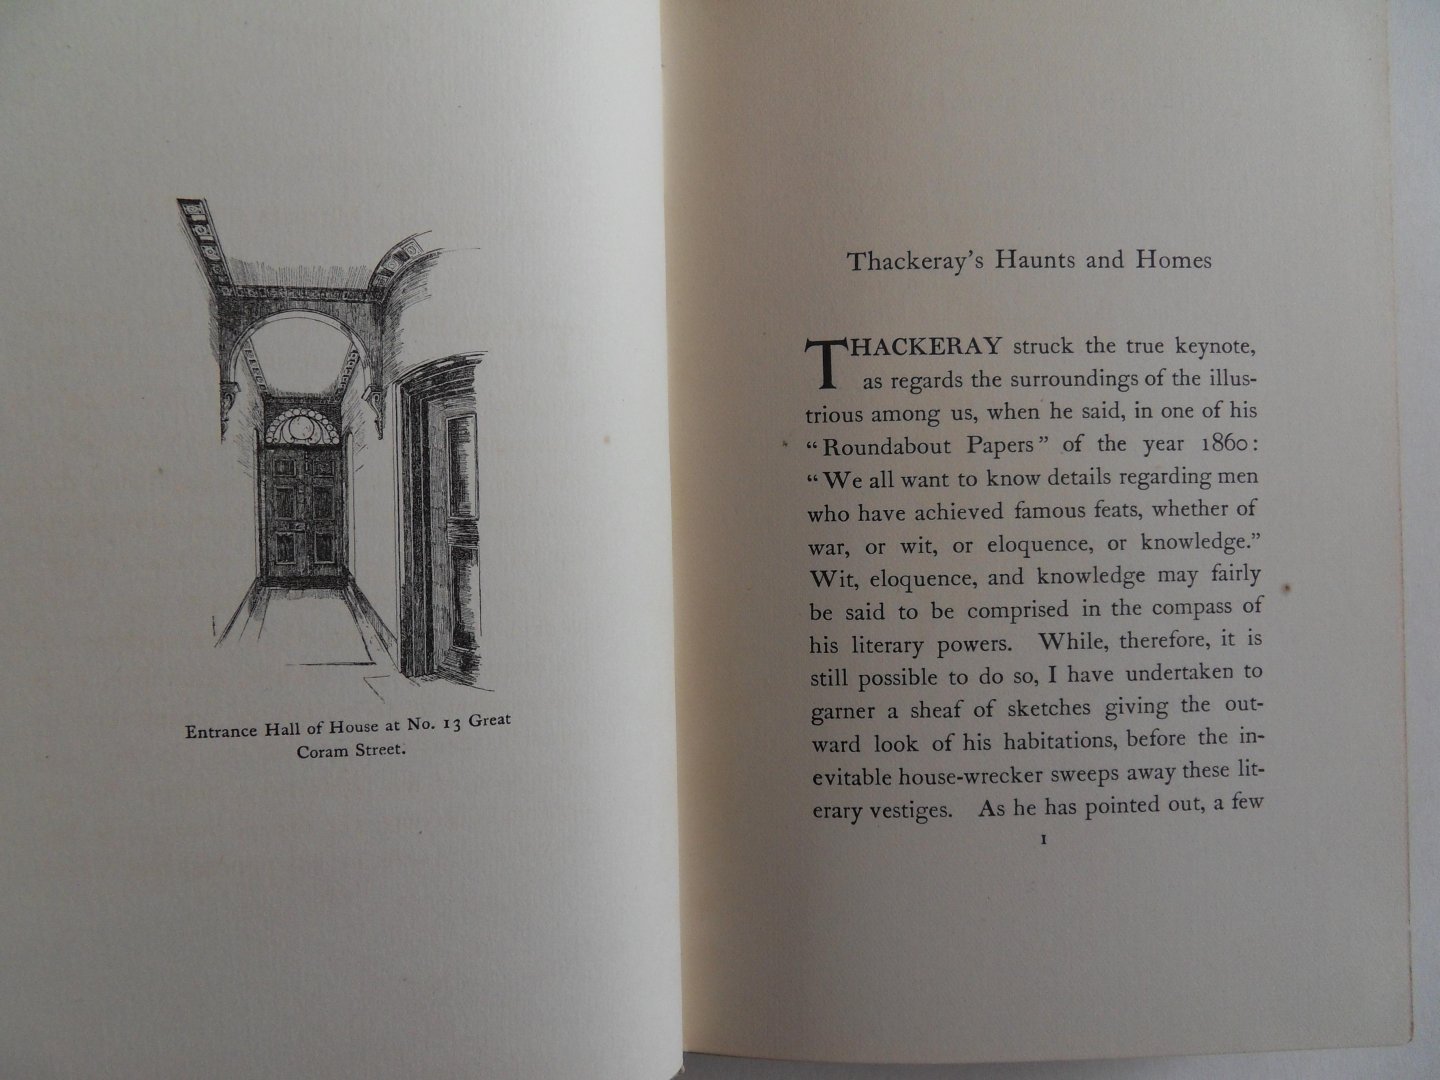 Eyre Crowe, A.R.A. - Thackeray`s Haunts and Homes. [ Beperkte oplage van 1280 exemplaren, waarvan 260 exemplaren voor Engeland waren bestemd ].